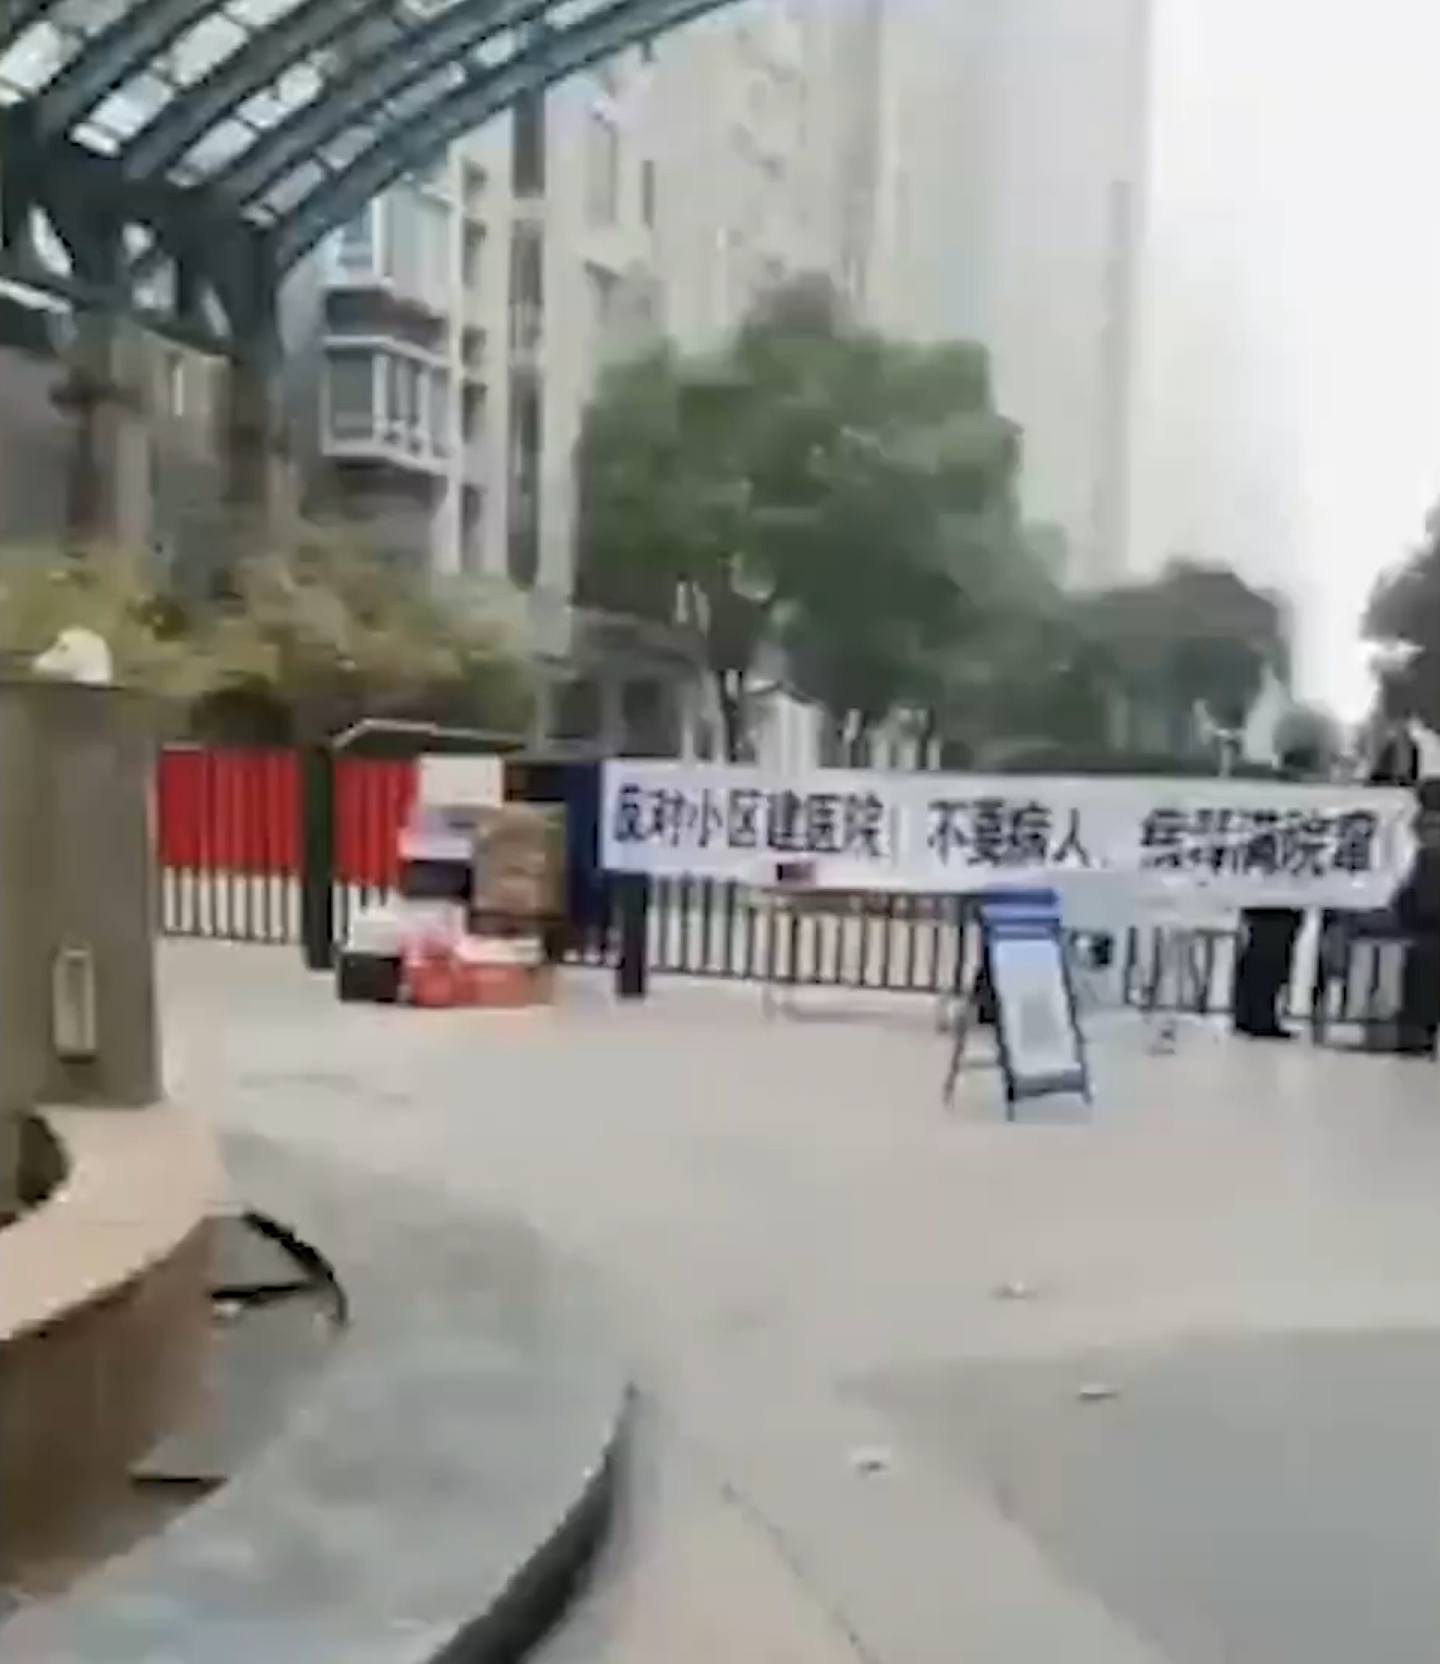 河南郑州有小区声称将对外来人员「格杀勿论」、「就地正法」。 （影片截图）